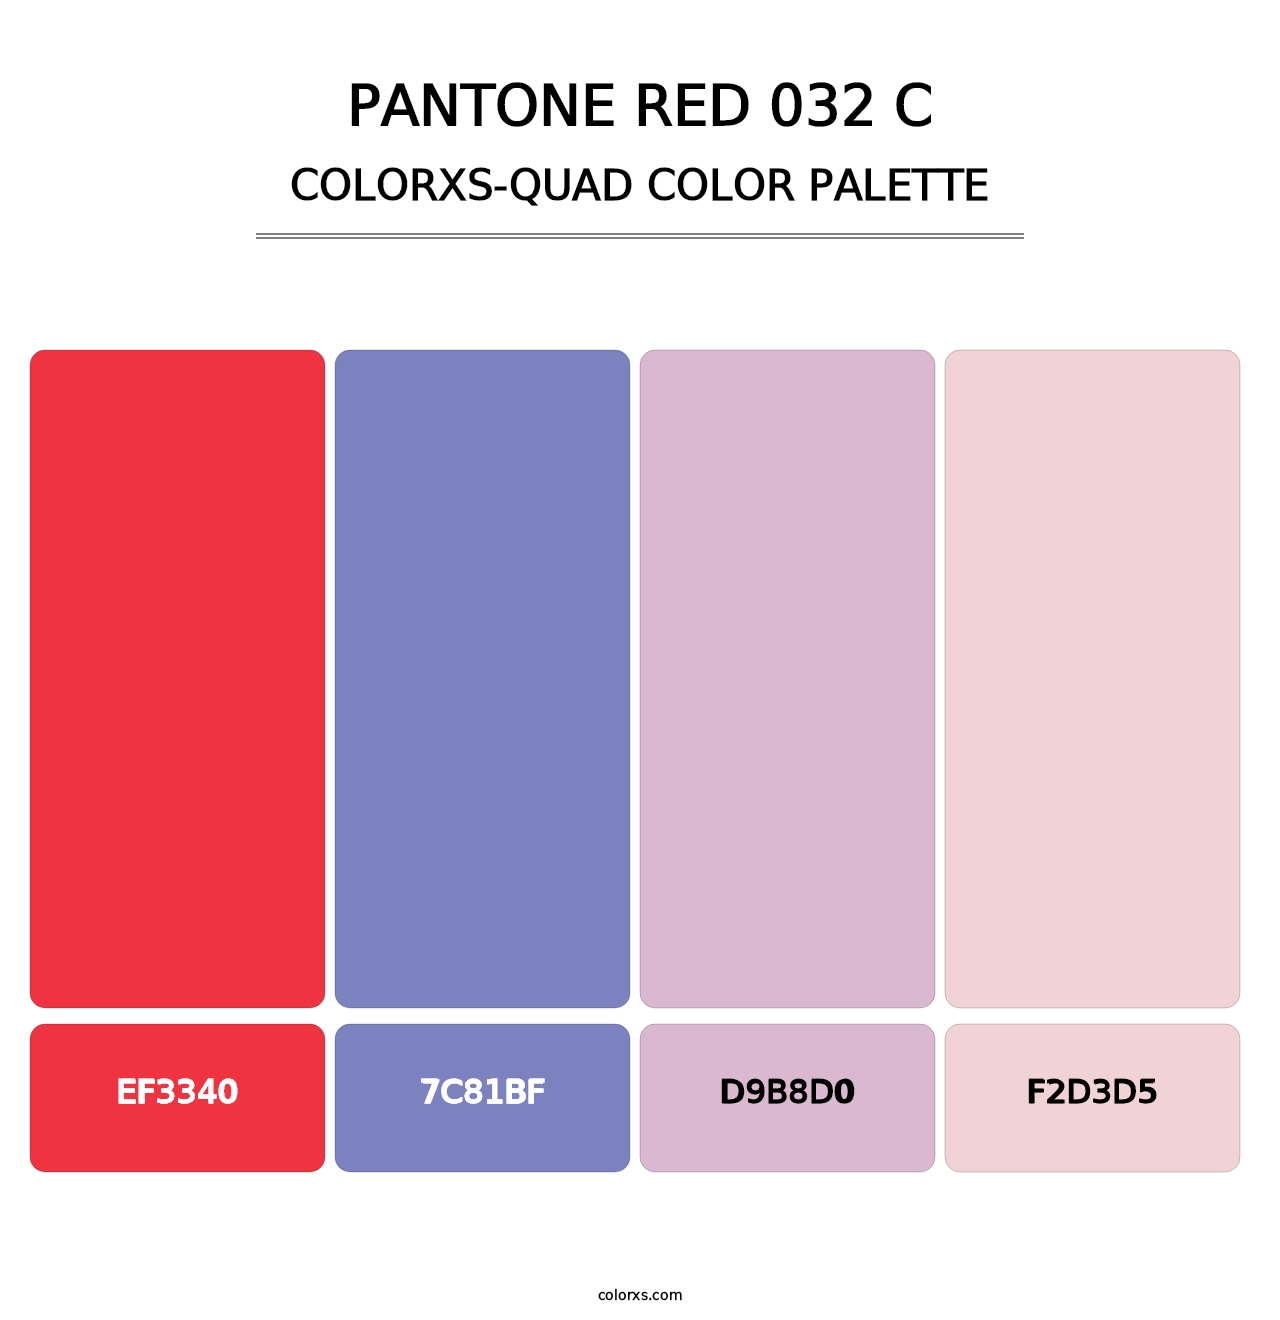 PANTONE Red 032 C - Colorxs Quad Palette